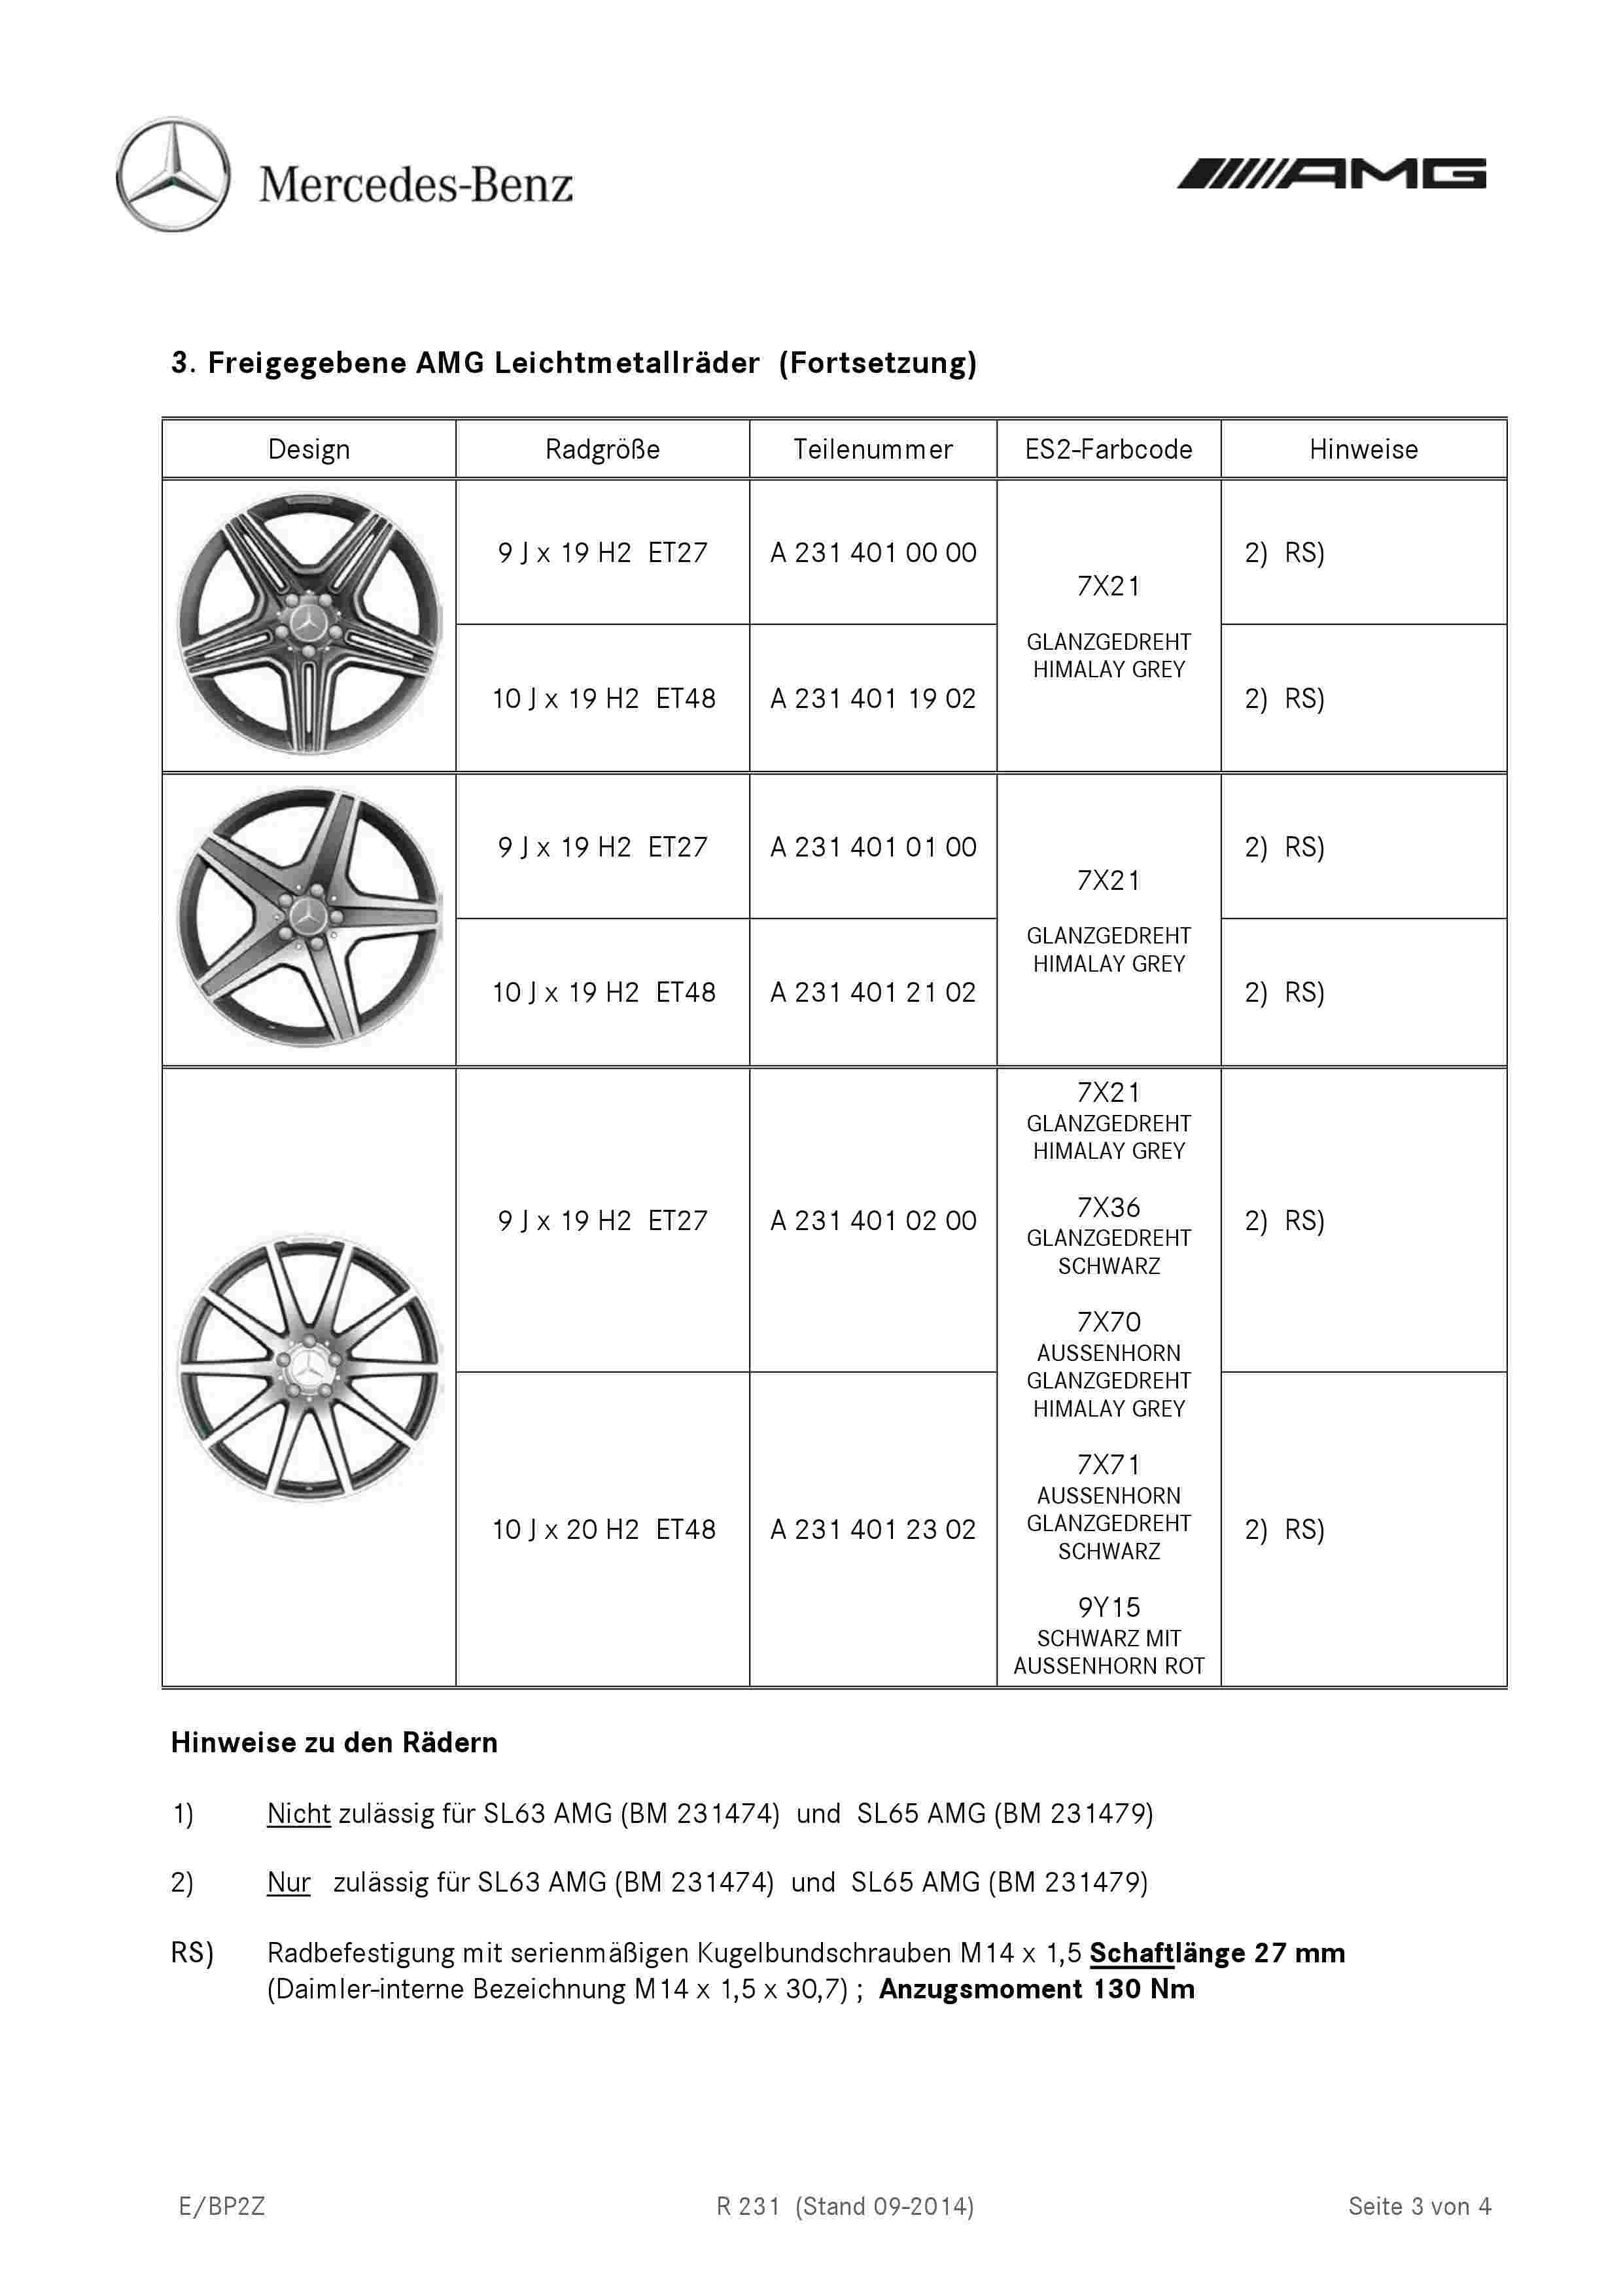 rodas - (R231): Medidas oficiais das rodas e pneus 0004_326